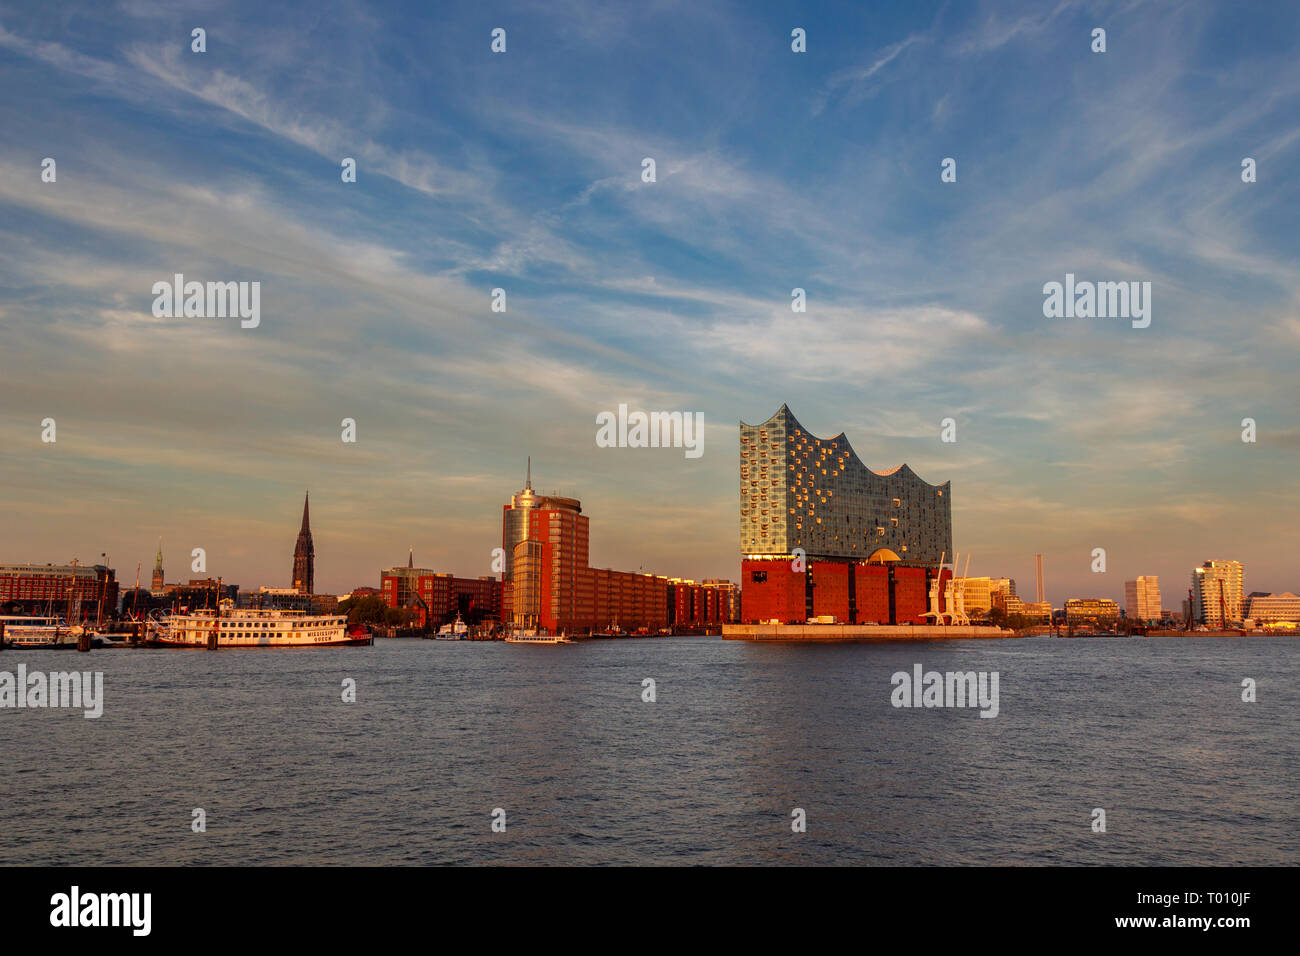 Elbphilharmonie im Hafen von Hamburg, Deutschland im Abendlicht. Stockfoto